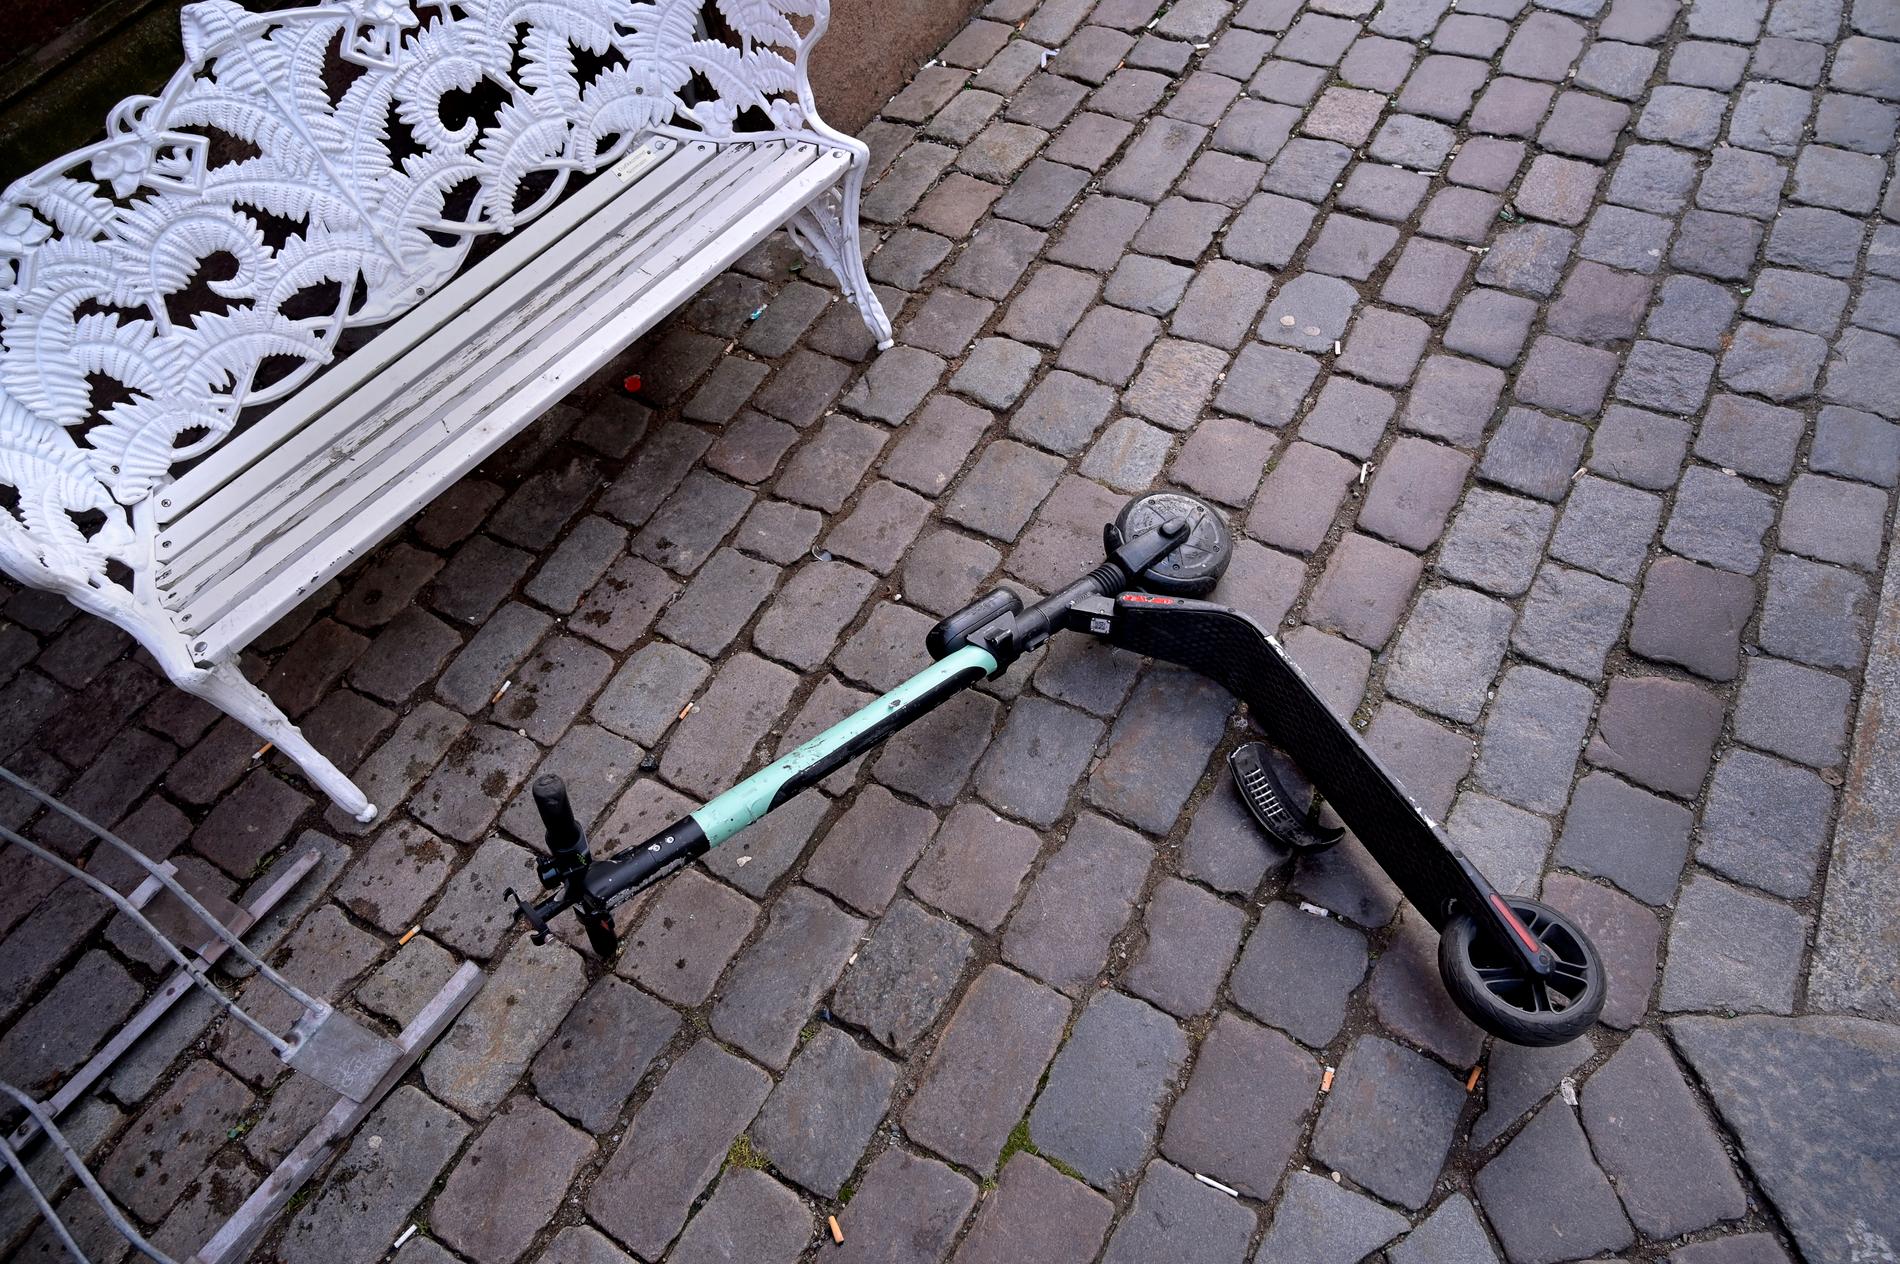 En elsparkcykel slängd på marken i Stockholm. Arkivbild.